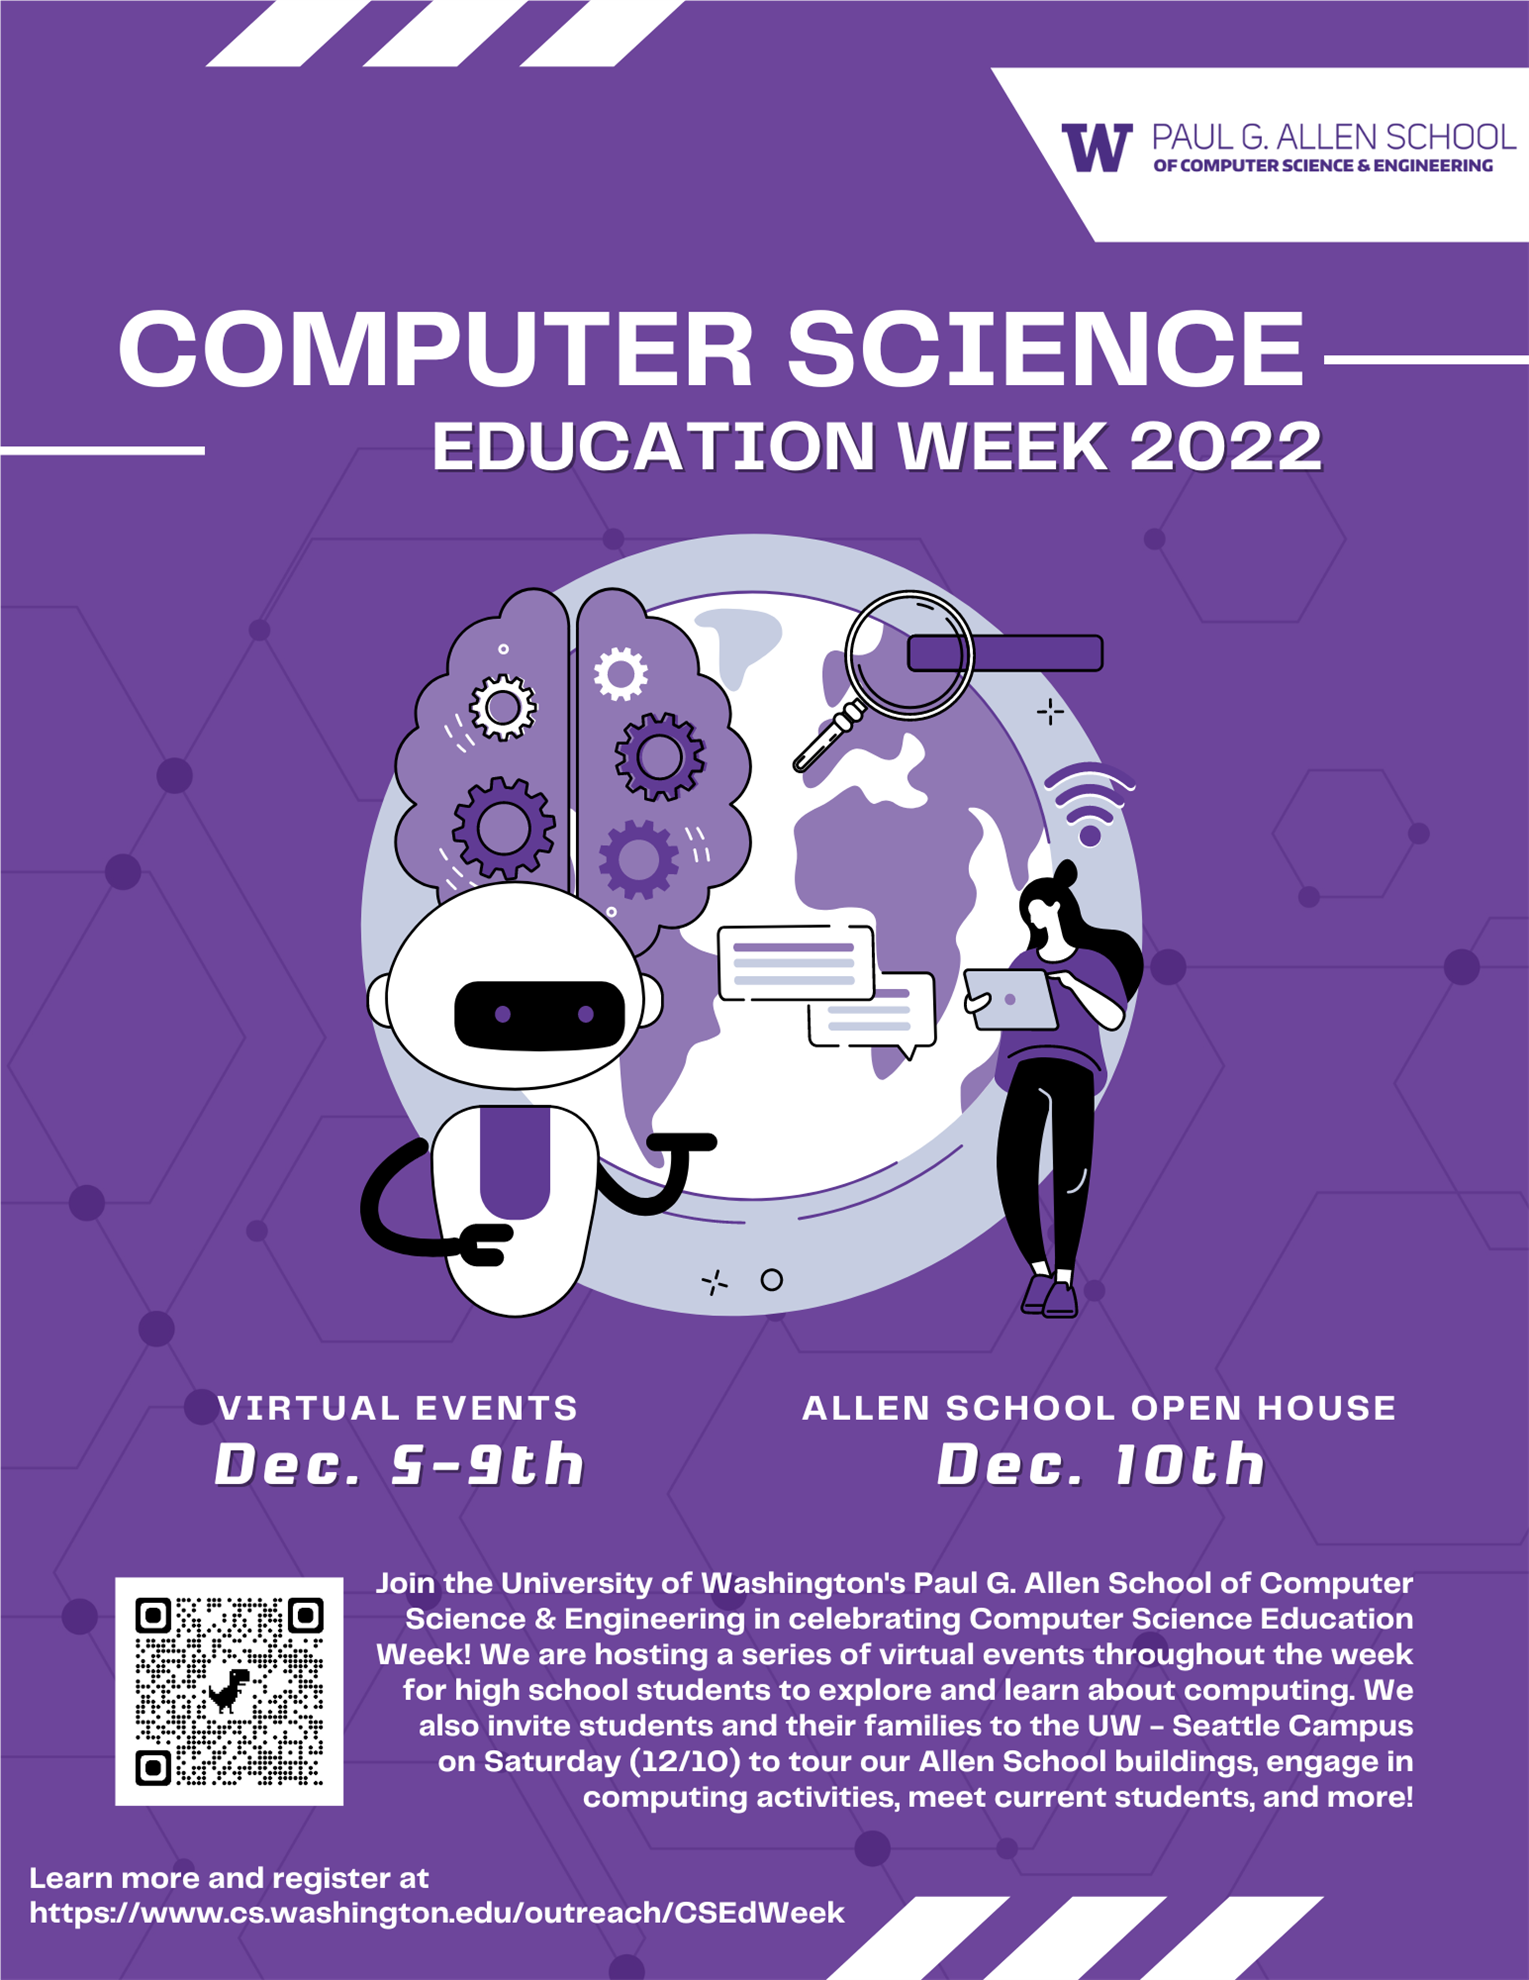 Open Science Week - Allen Institute